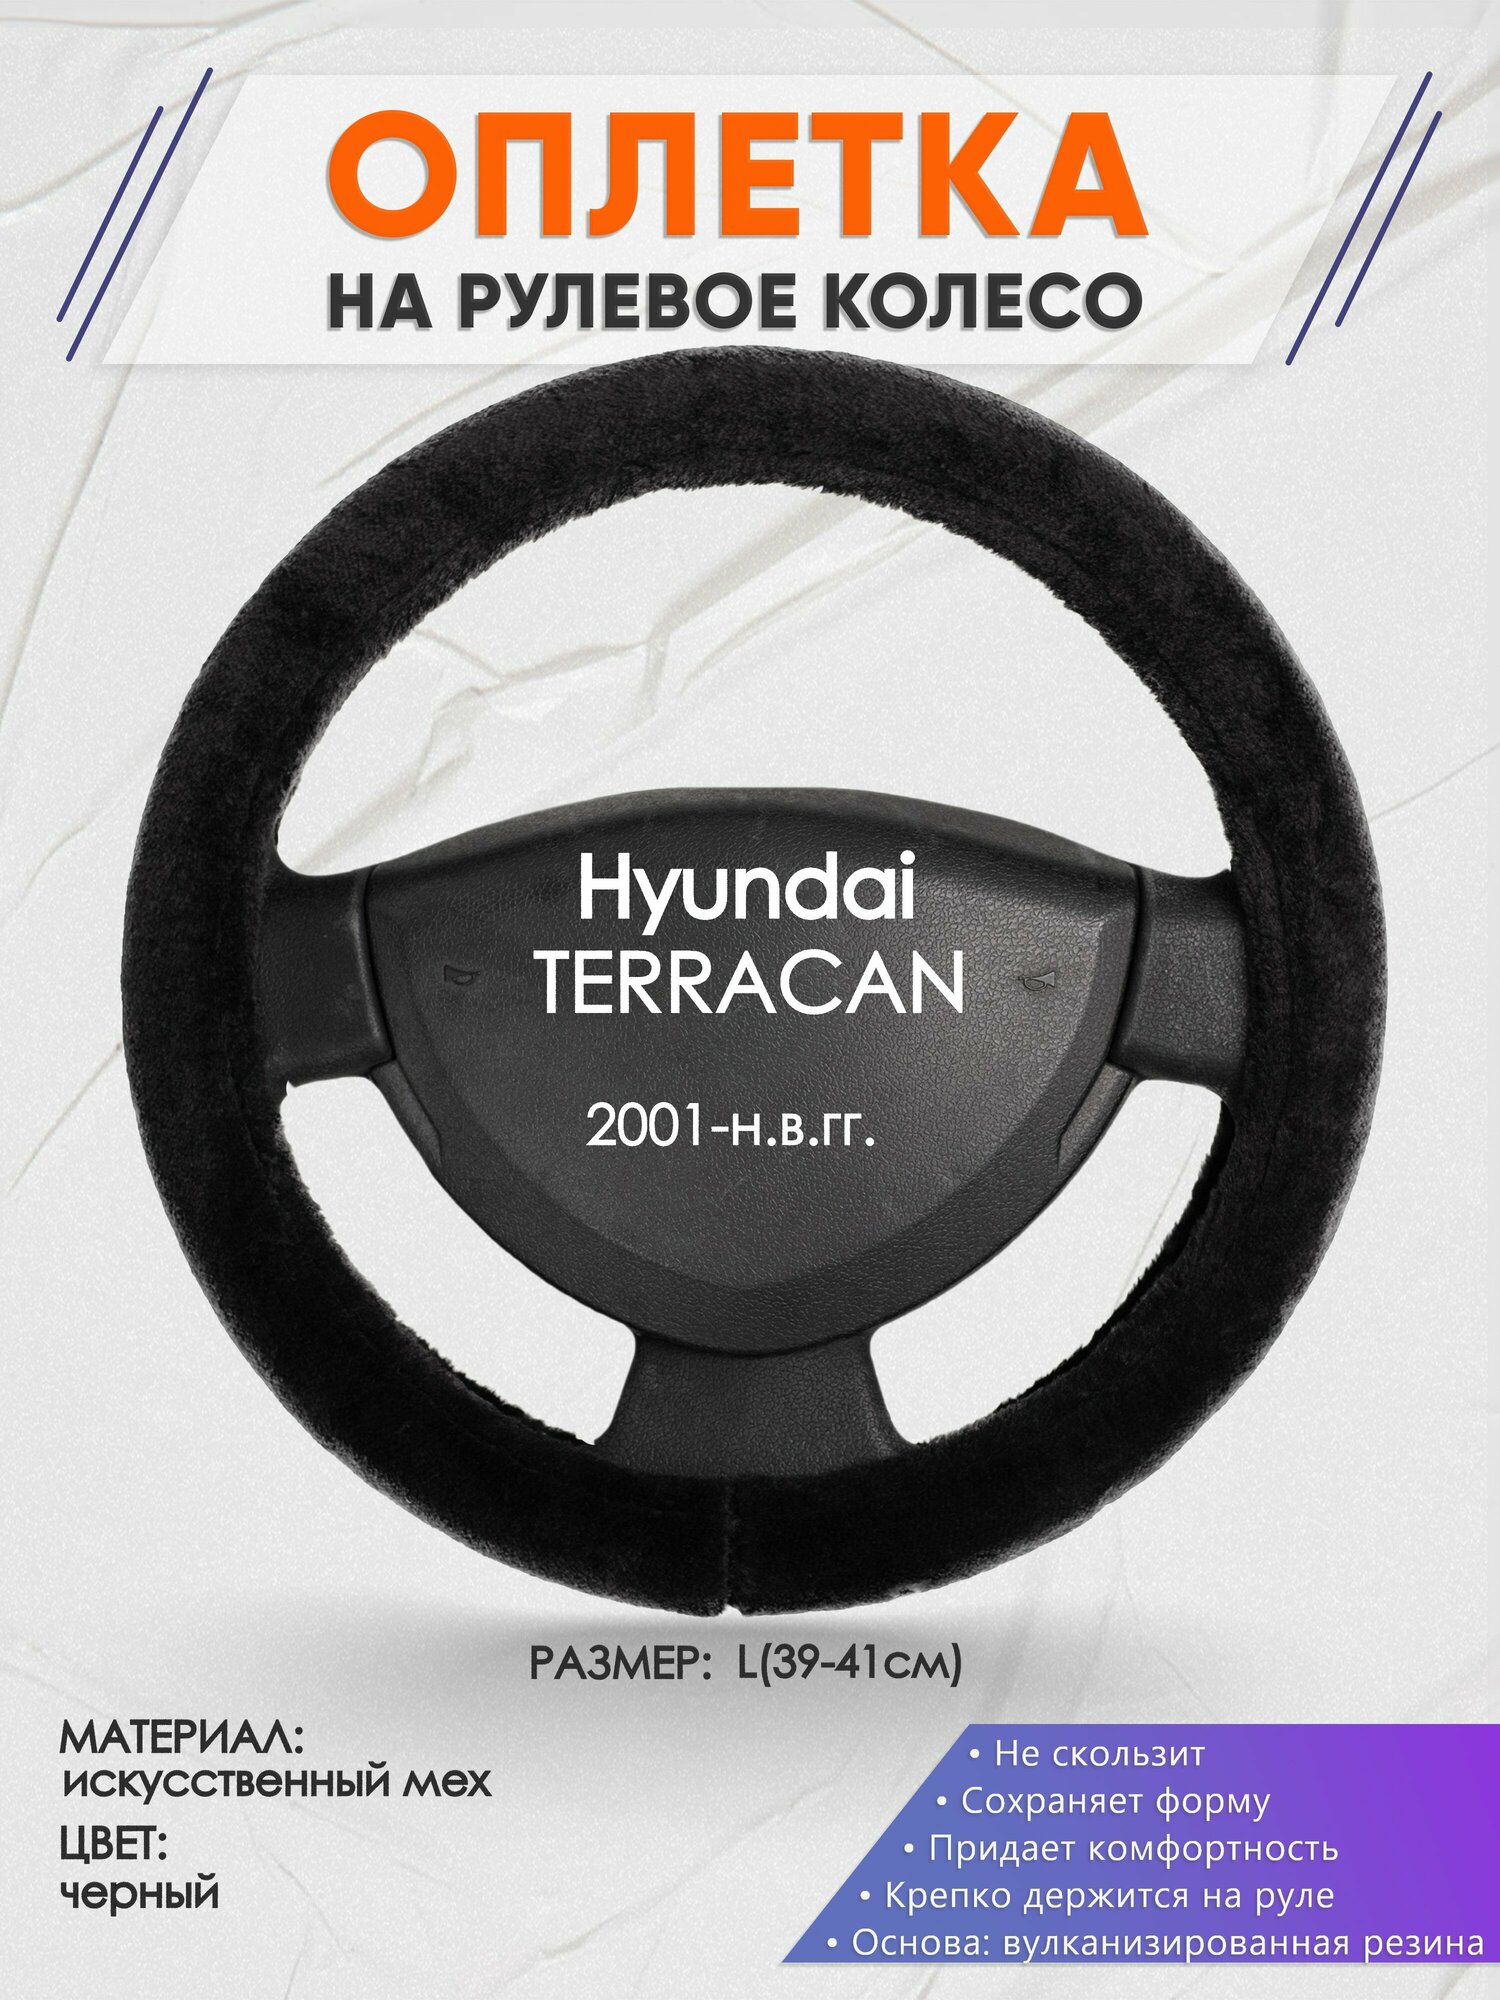 Оплетка на руль для Hyundai TERRACAN(Хендай Терракан) 2001-н. в L(39-41см) Искусственный мех 46